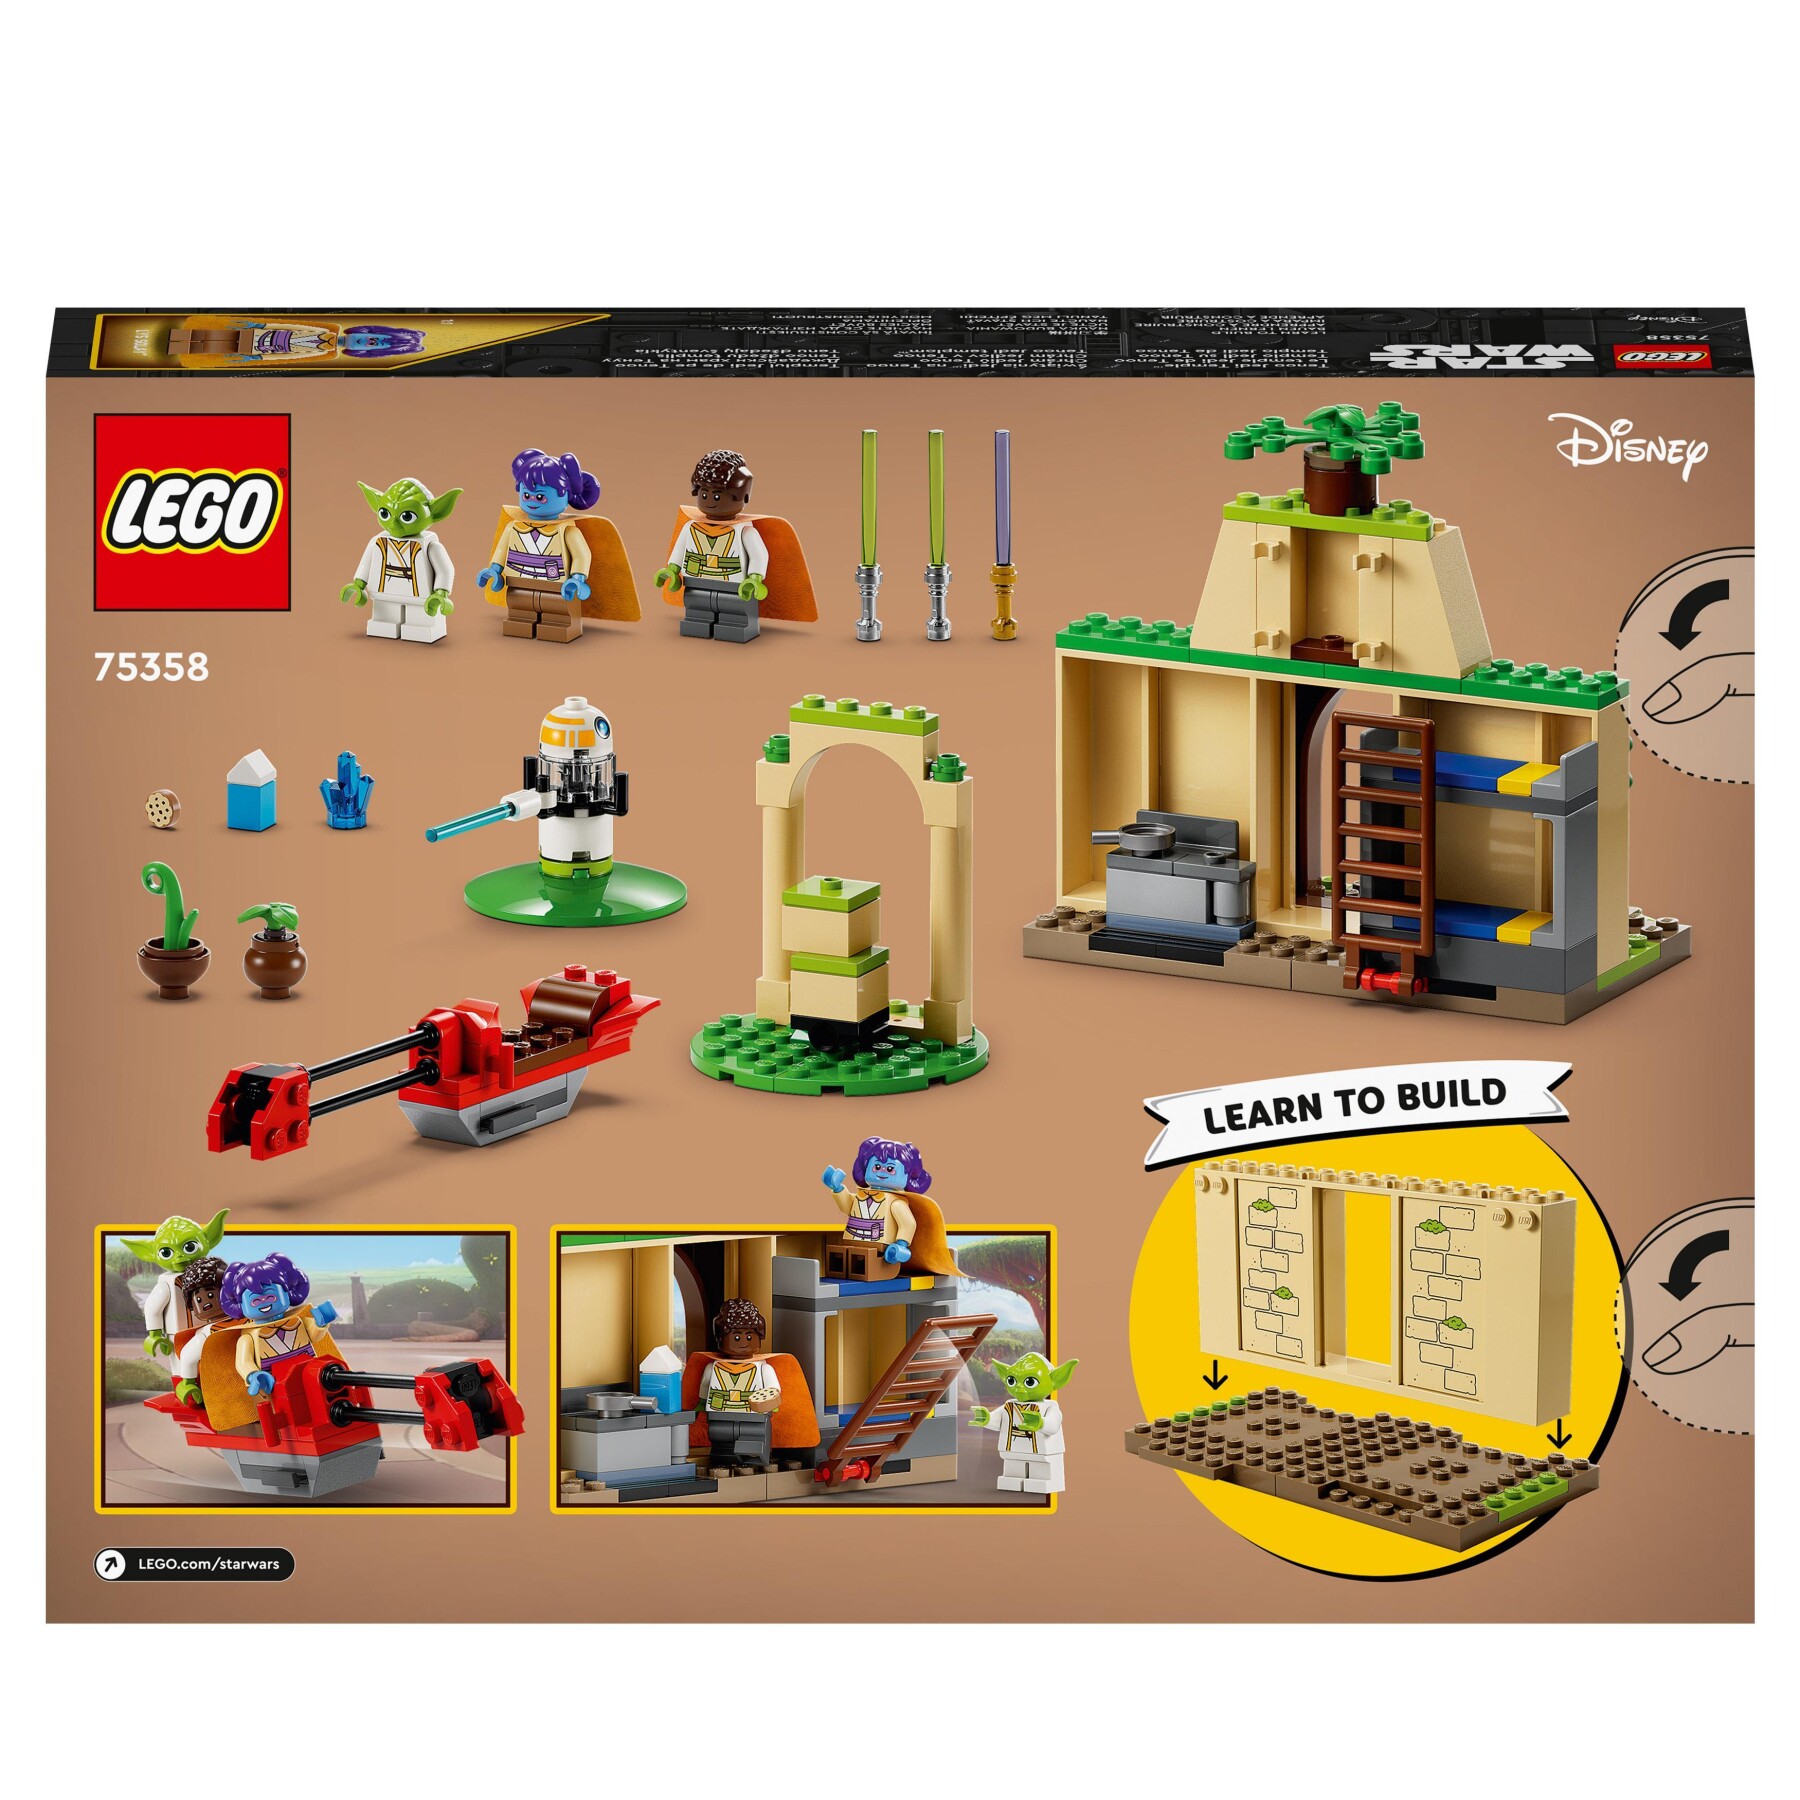 Lego star wars 75358 tempio jedi su tenoo con maestro yoda, spade laser giocattolo, droide e speeder bike, giochi per bambini 4+ - LEGO® Star Wars™, Star Wars